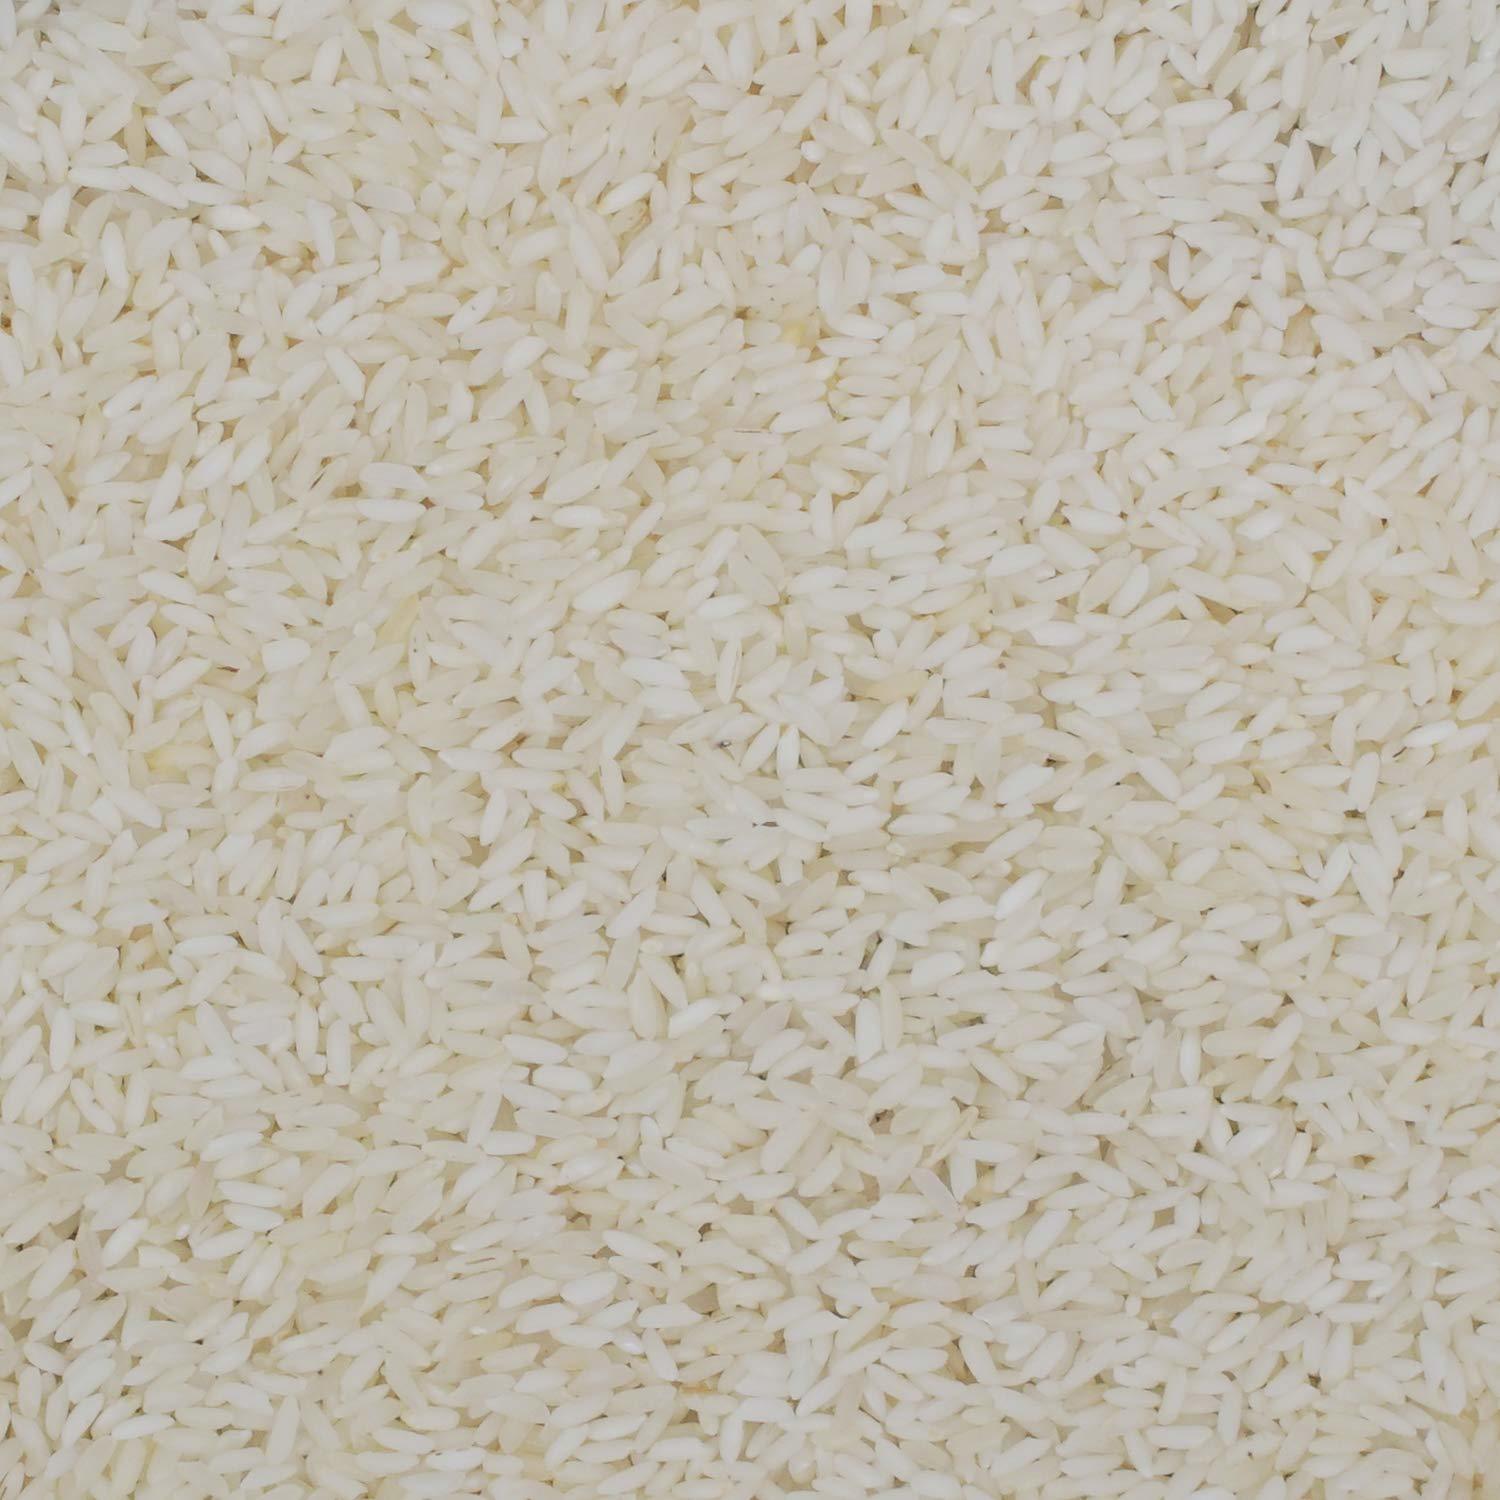 Sona Masoori Steam Rice (Broken 5 %)